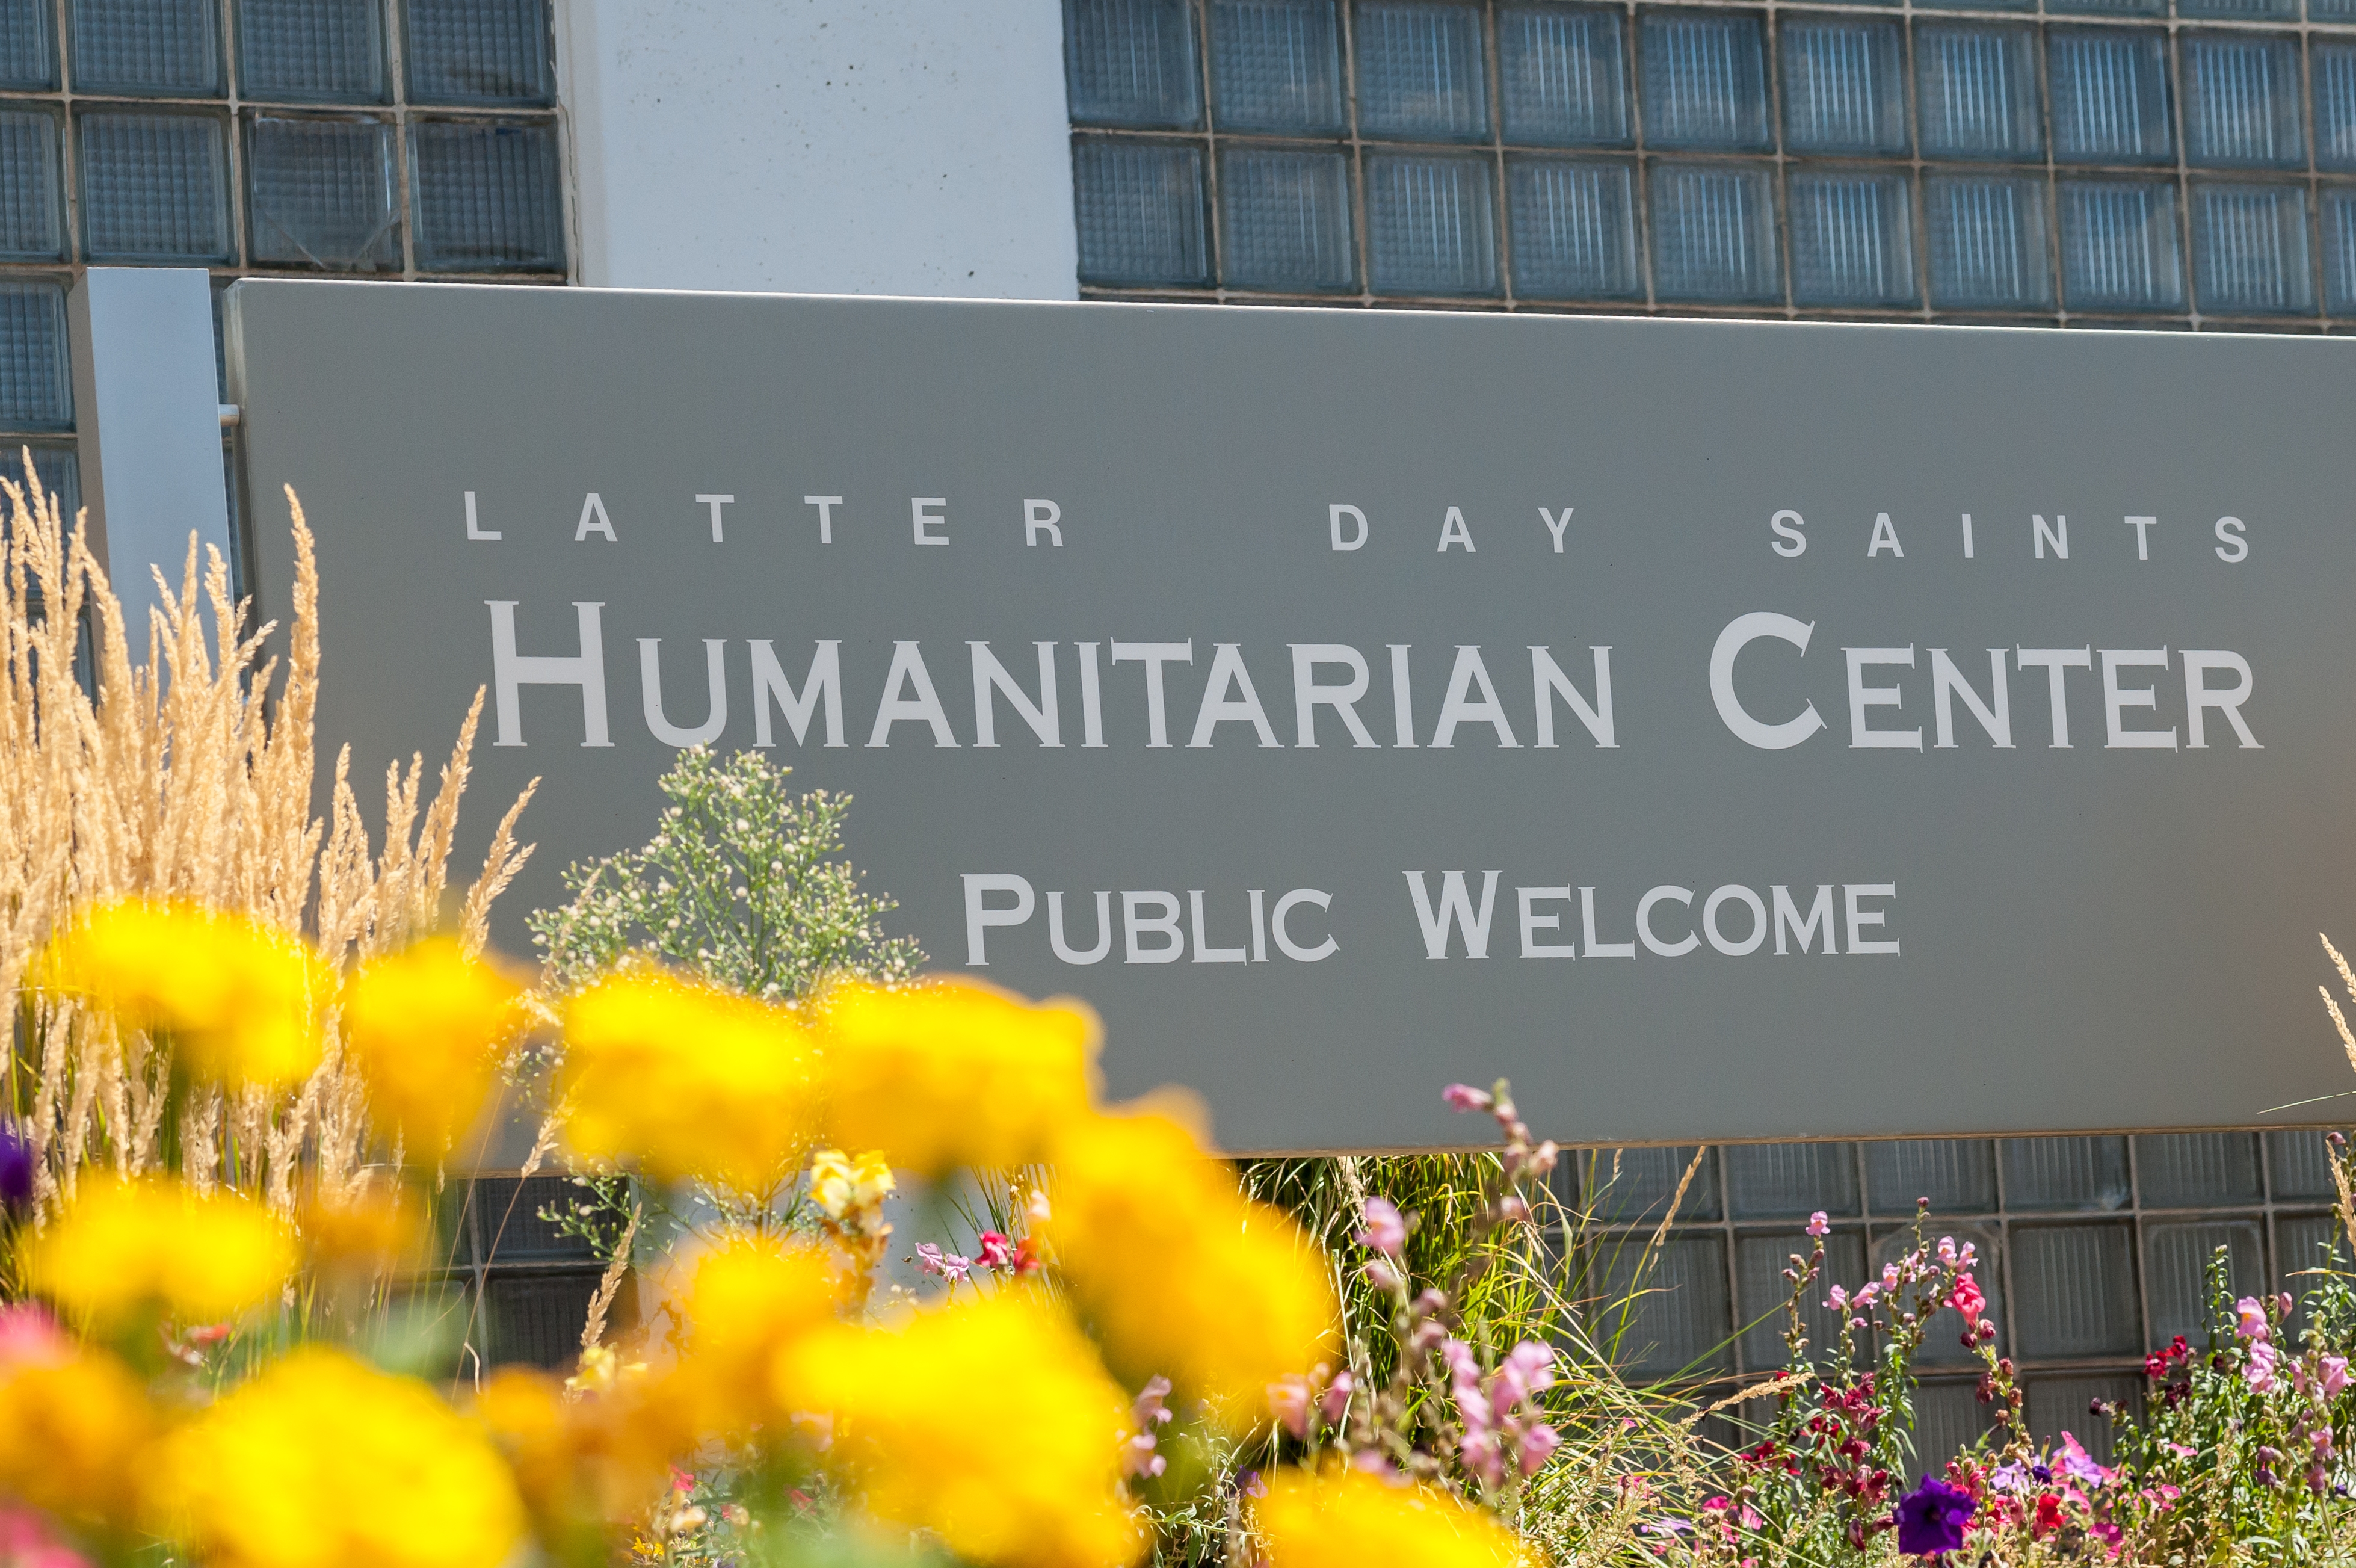 Humanitarian Center exterior